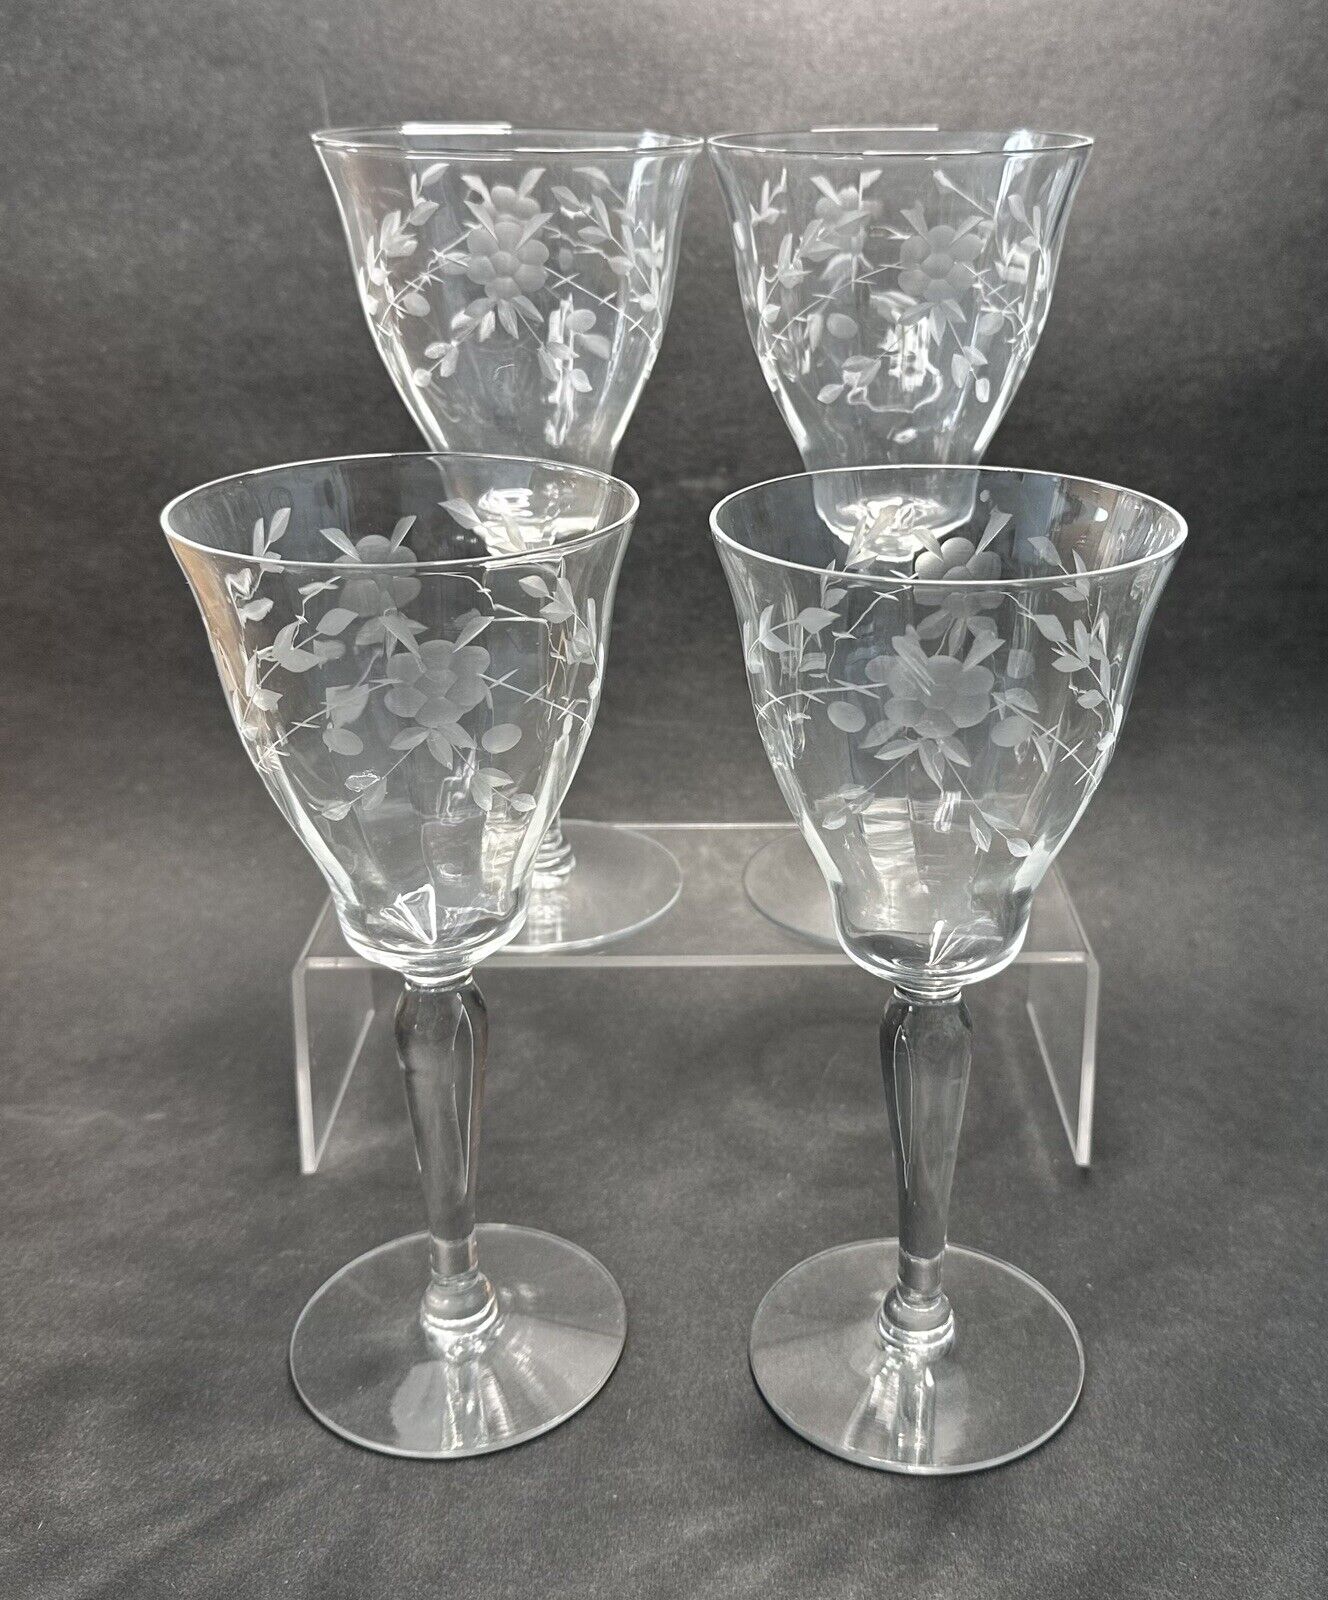 4 Vintage Etched Blossom Crystal Wine Glasses 7 5/8” Unique Shape Set Of 4